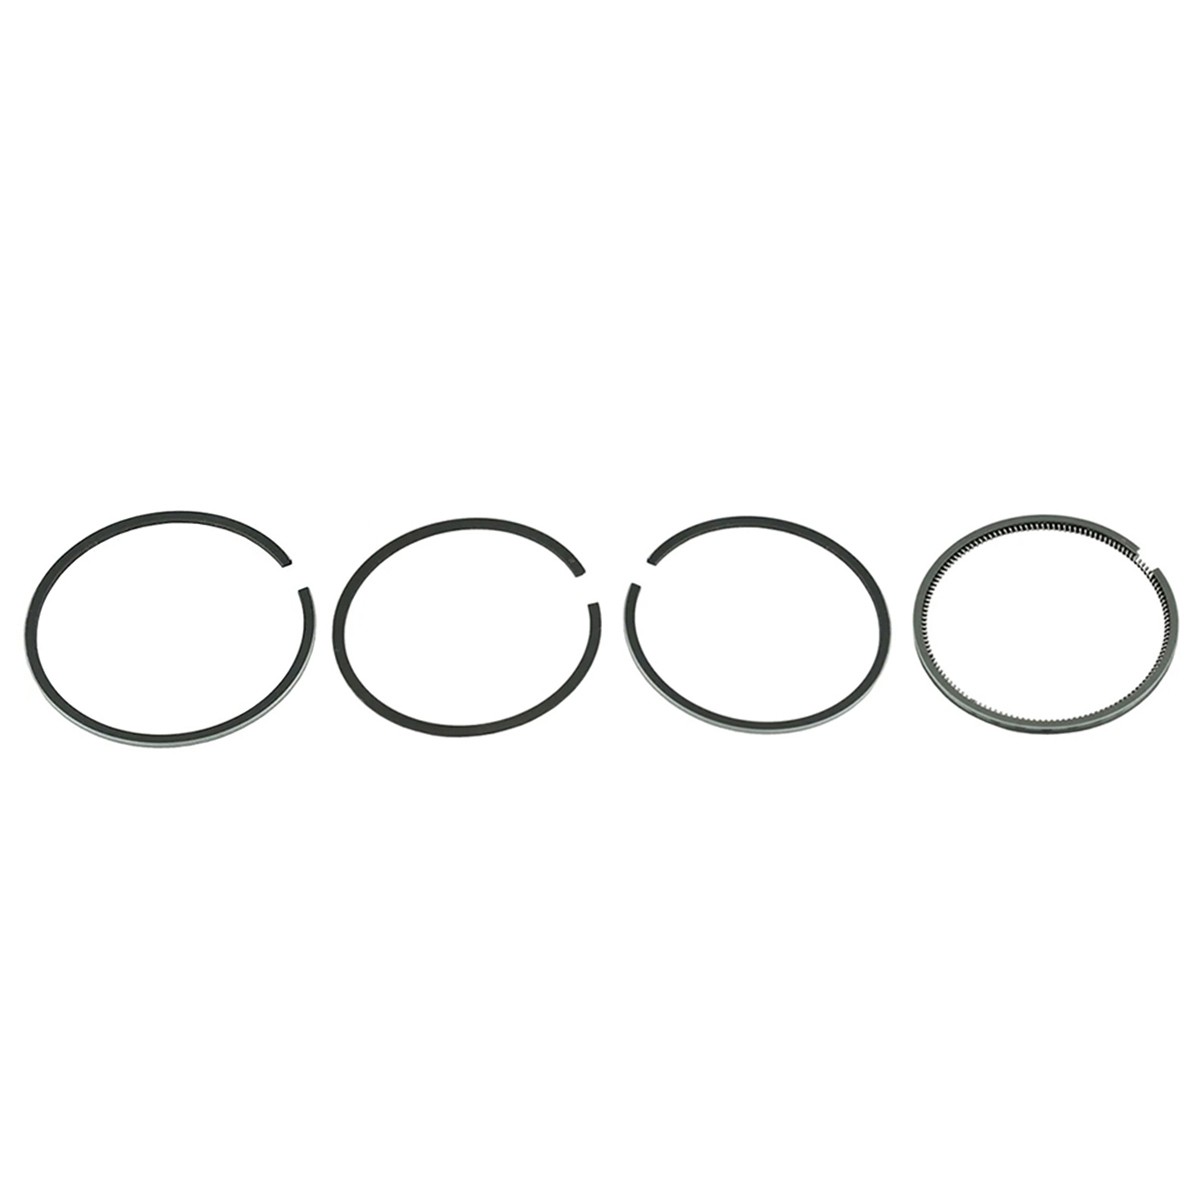 Pístní kroužky / Ø 95 mm / 2,50 x 2,00 x 2,00 x 4,50 mm / Toyosha S135 / Hinomoto E25/E250 / 2701-3110-000 / 8-26-100-02